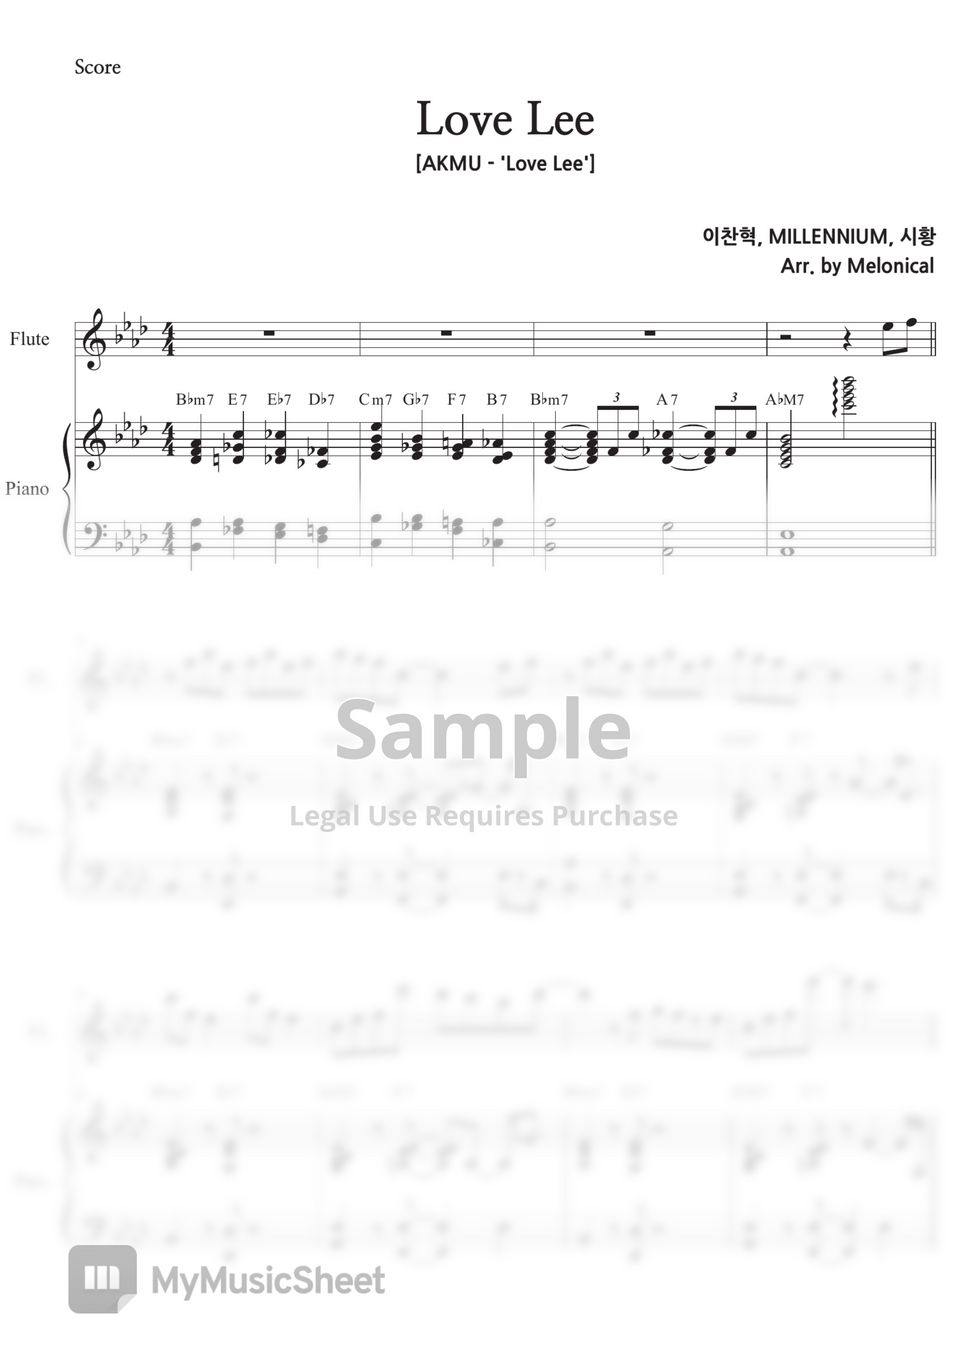 AKMU - Love Lee (Ensemble) by Melonical